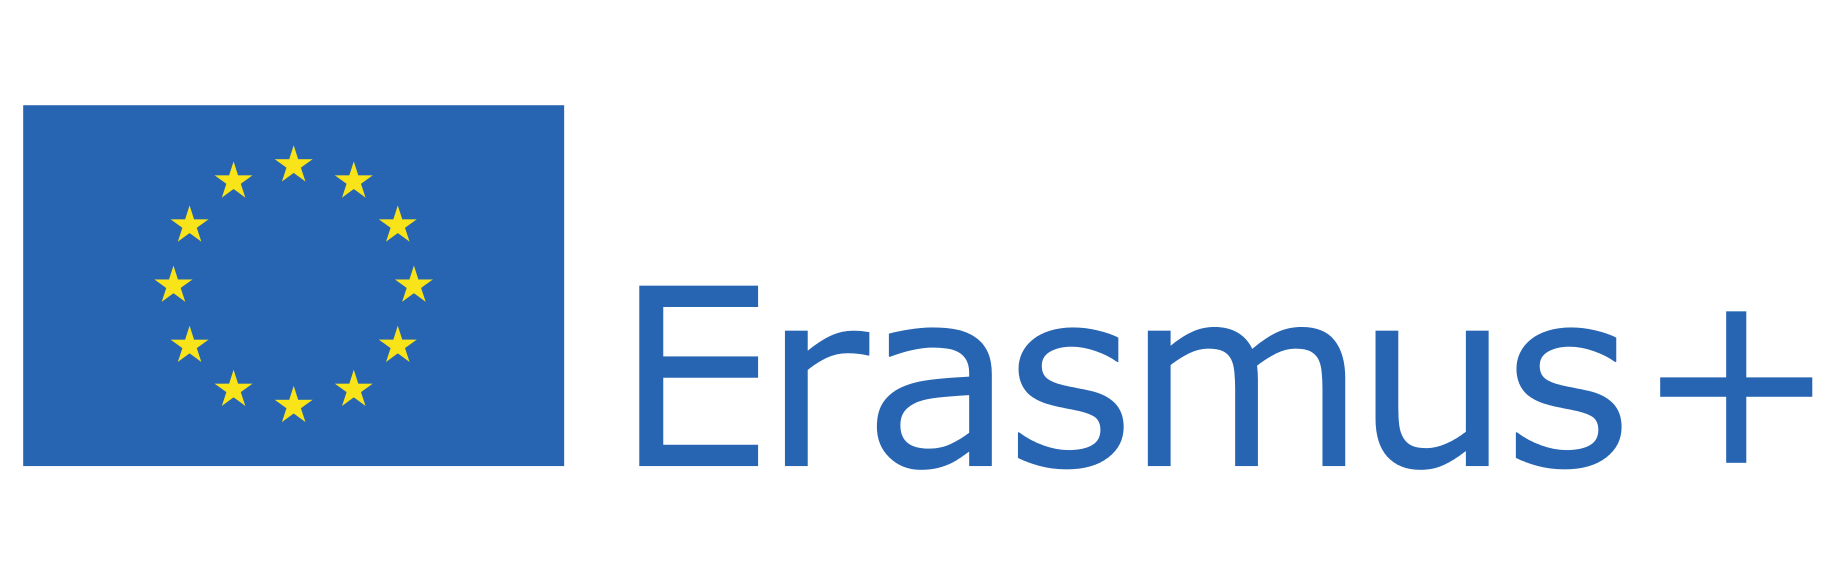 erasmus+_logo.svg.png